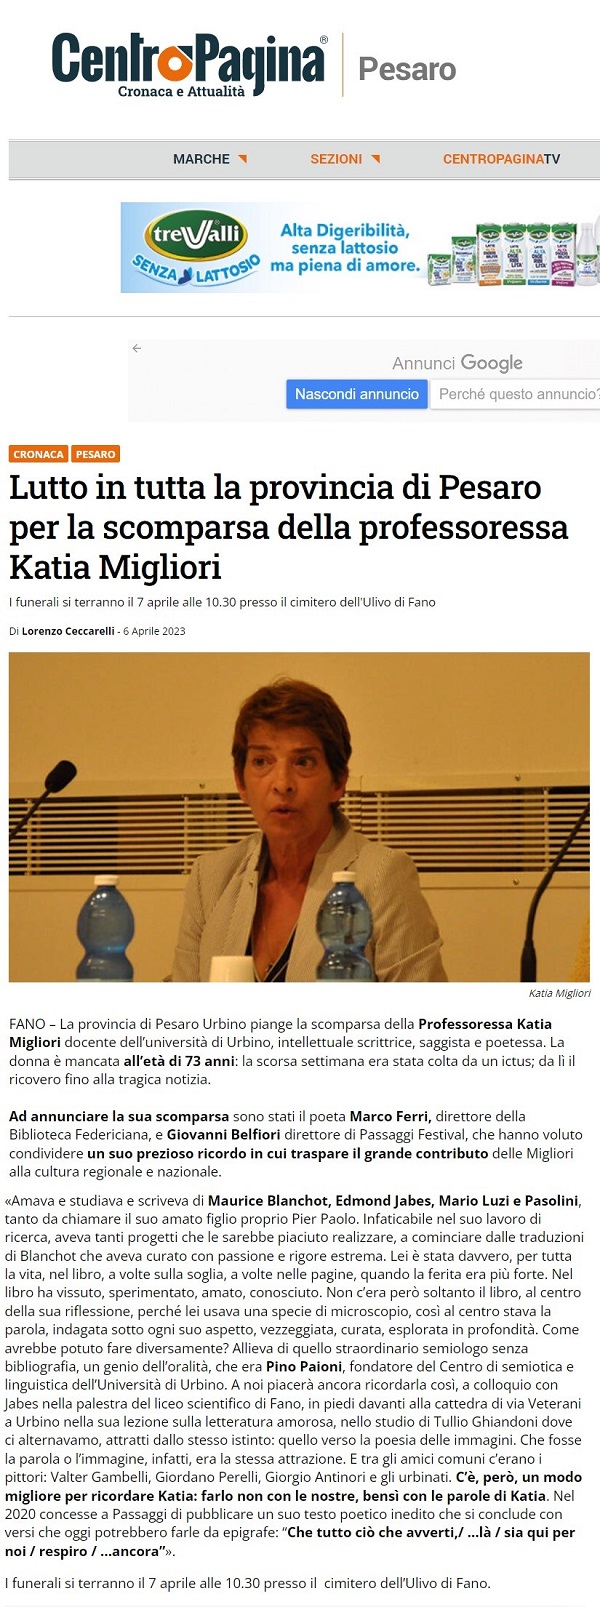 Lutto_in_tutta_la_provincia_di_Pesaro_per_la_scomparsa_della_professoressa_Katia_Migliori